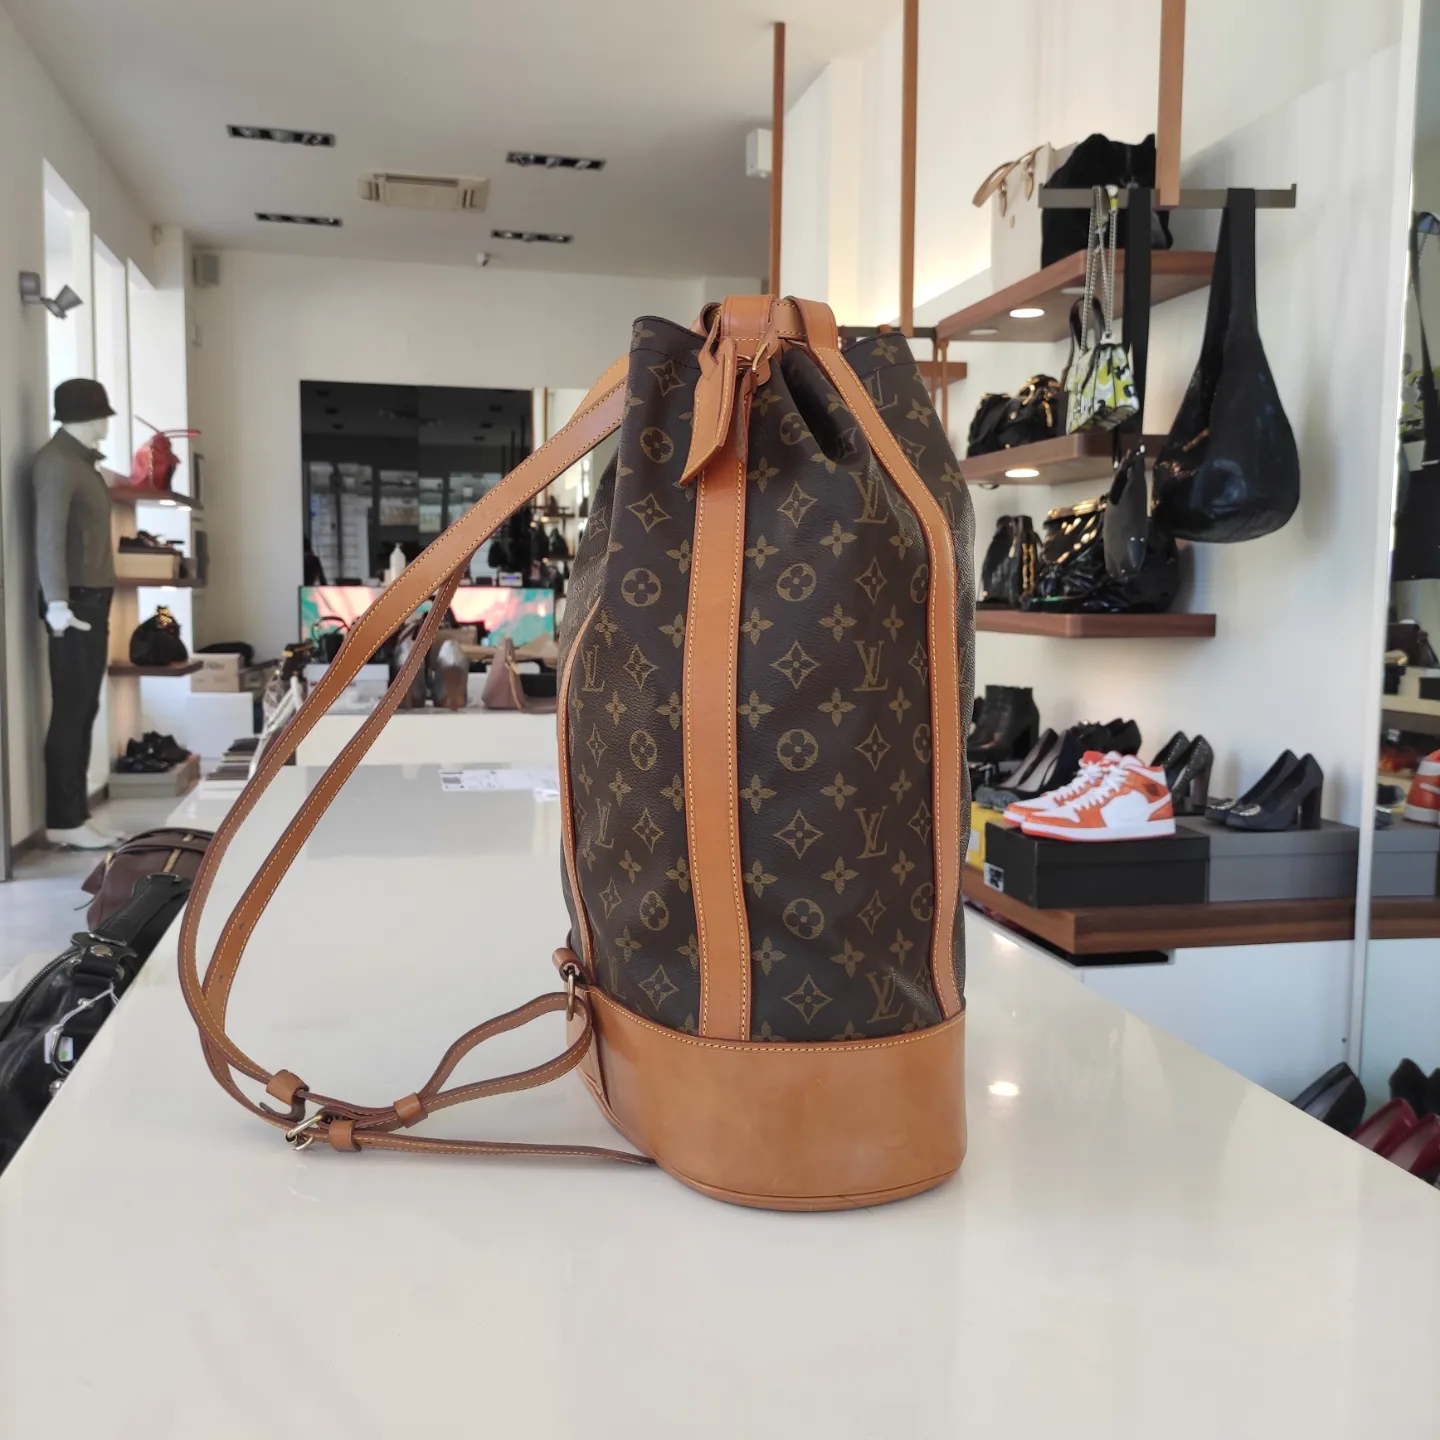 Louis Vuitton presenta backpack trunk, la reinvención del baúl